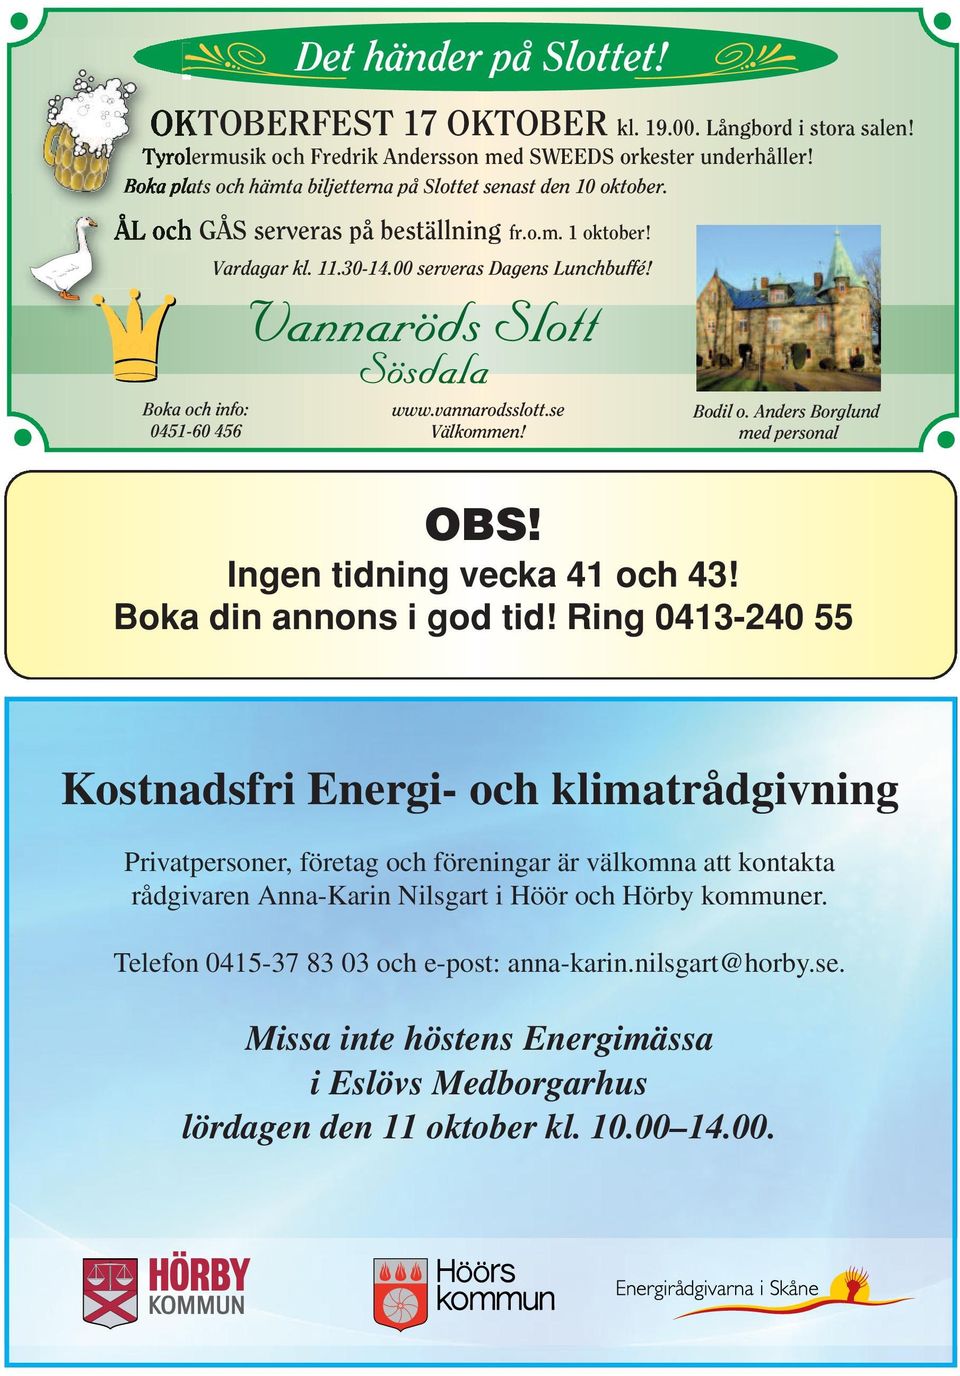 Boka och info: 0451-60 456 www.vannarodsslott.se Välkommen! Bodil o.anders Borglund med personal OBS! Ingen tidning vecka 41 och 43! Boka din annons i god tid!